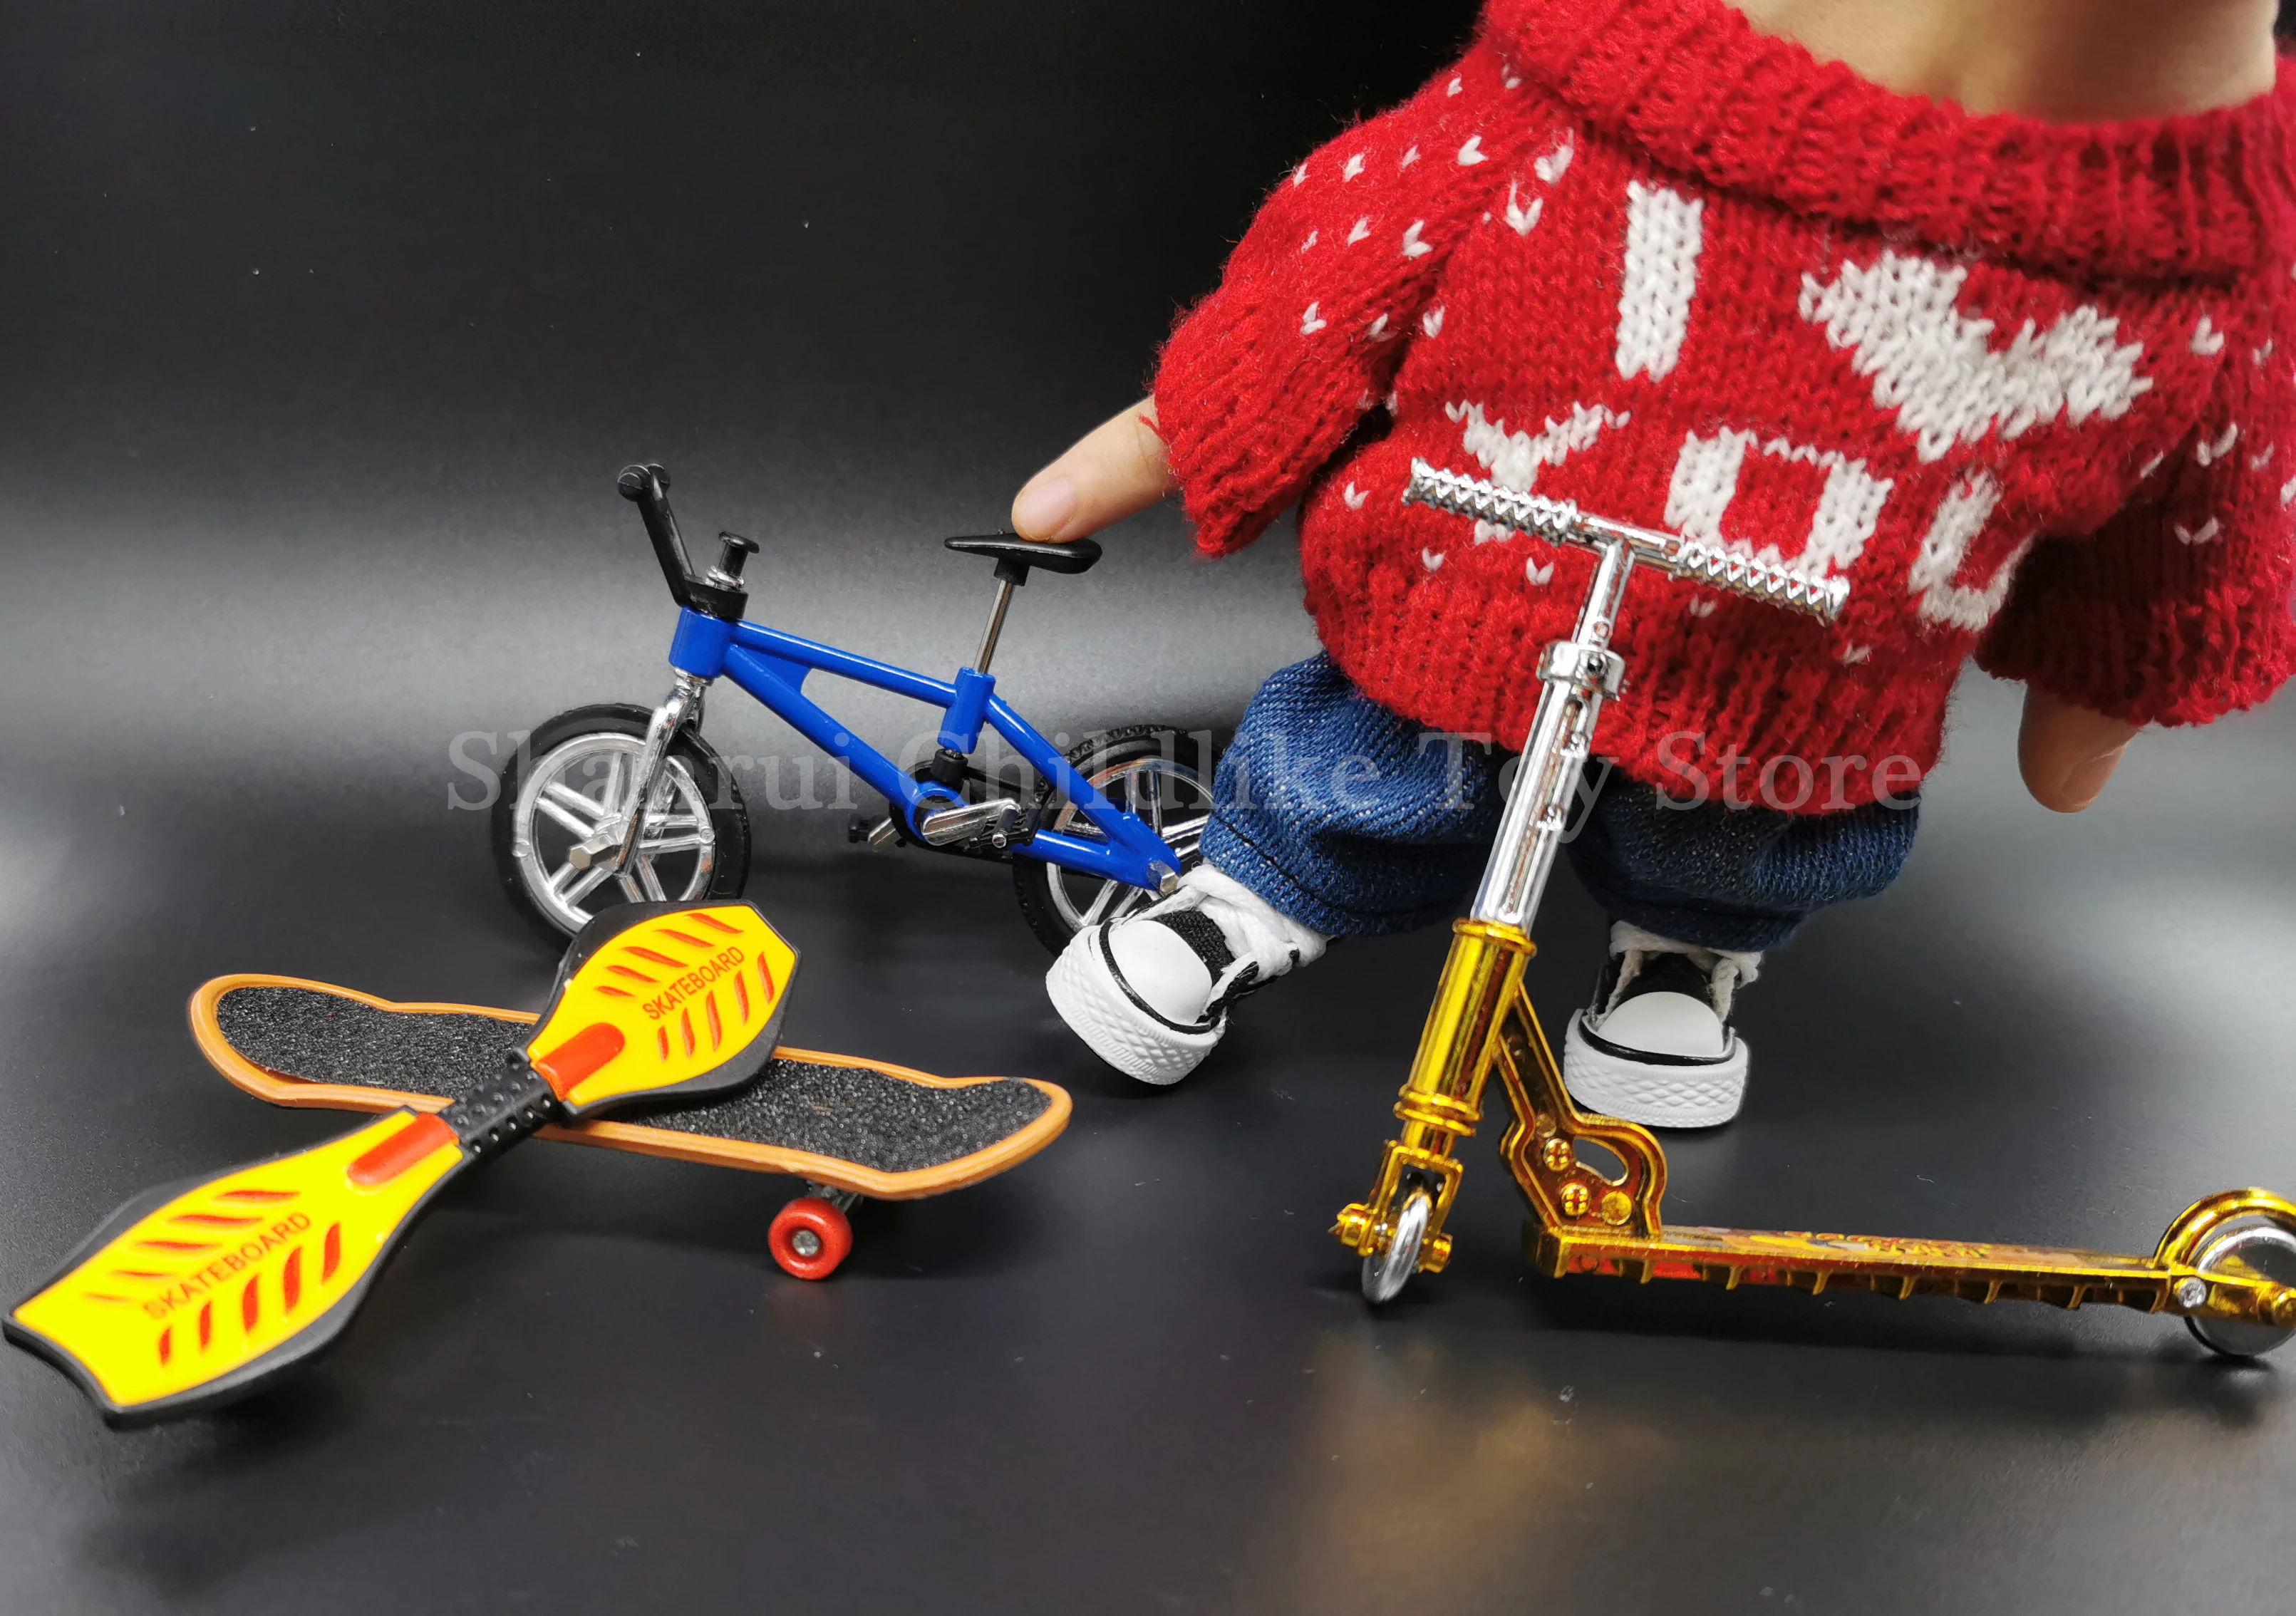 フィンガースケートボード用ミニスクーター,2輪スクーター,子供用ミニクロス,教育用おもちゃ,フィンガーバイク,楽しいおもちゃ - AliExpress  おもちゃ  ホビー